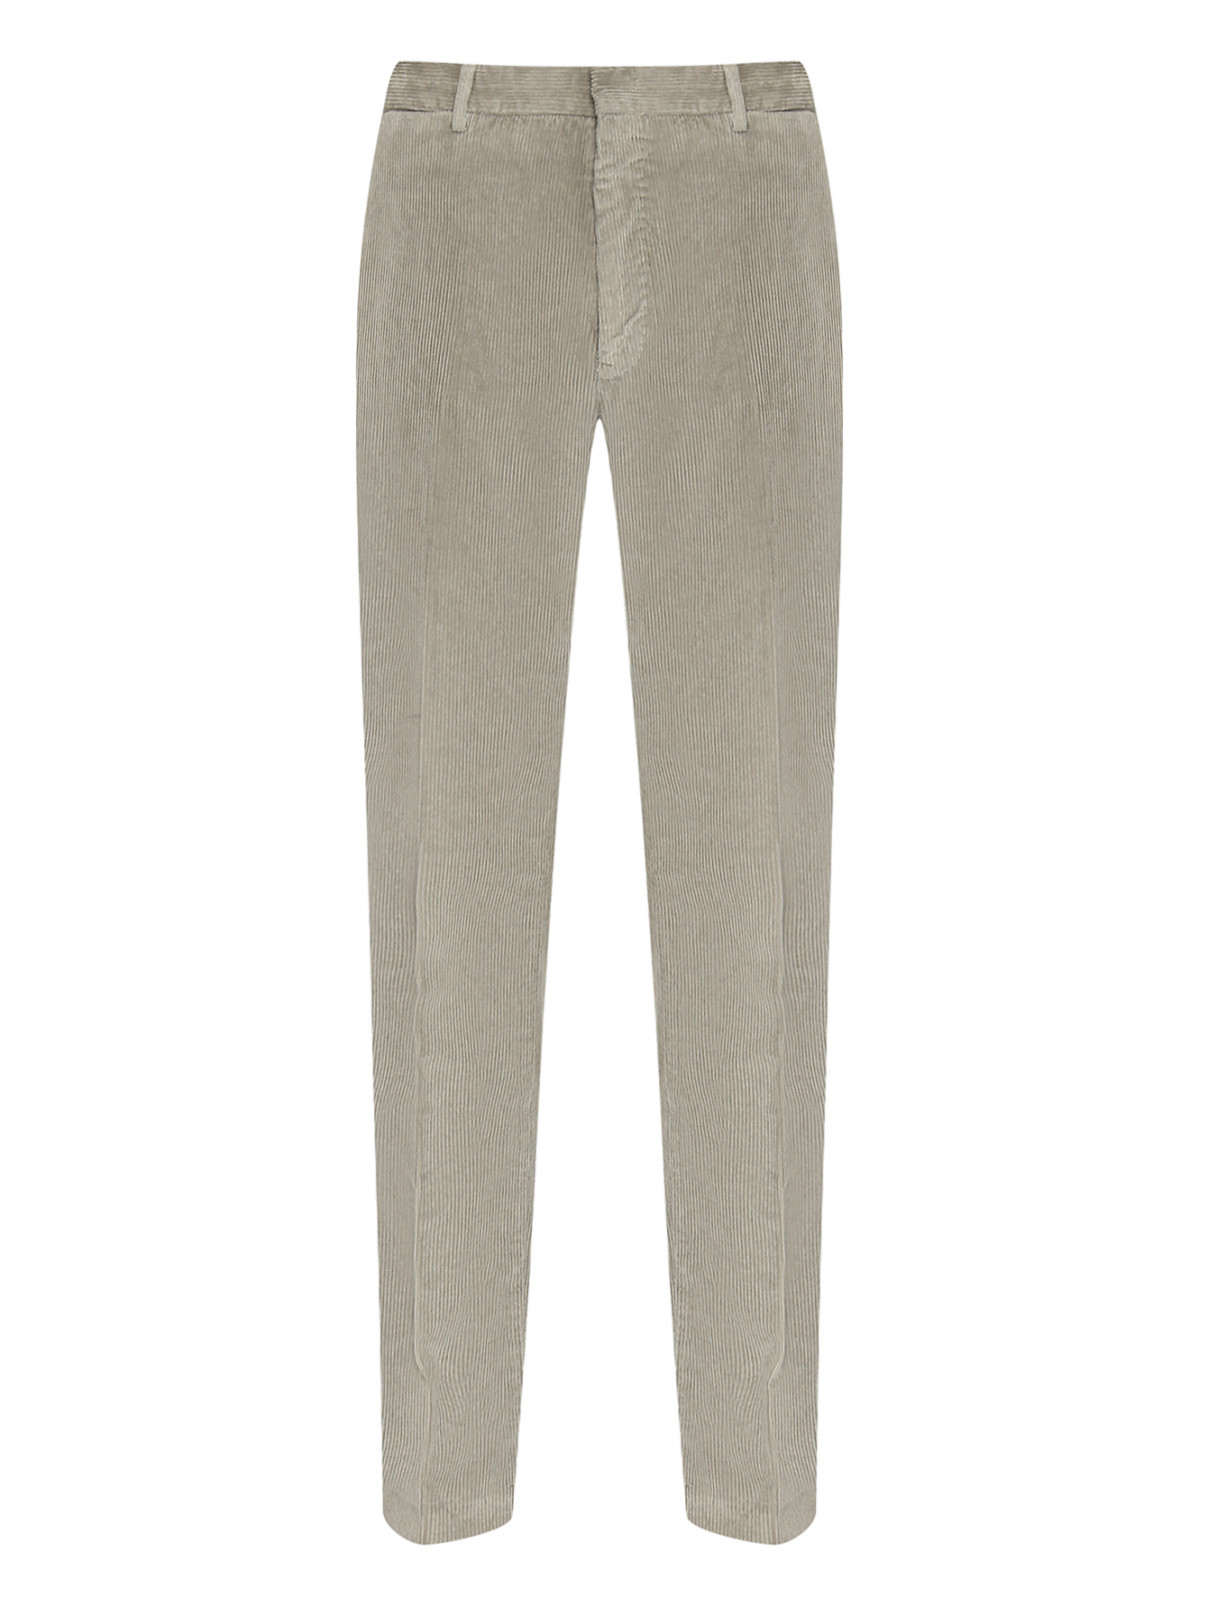 Вельветовые брюки из хлопка прямого кроя PT Torino  –  Общий вид  – Цвет:  Зеленый